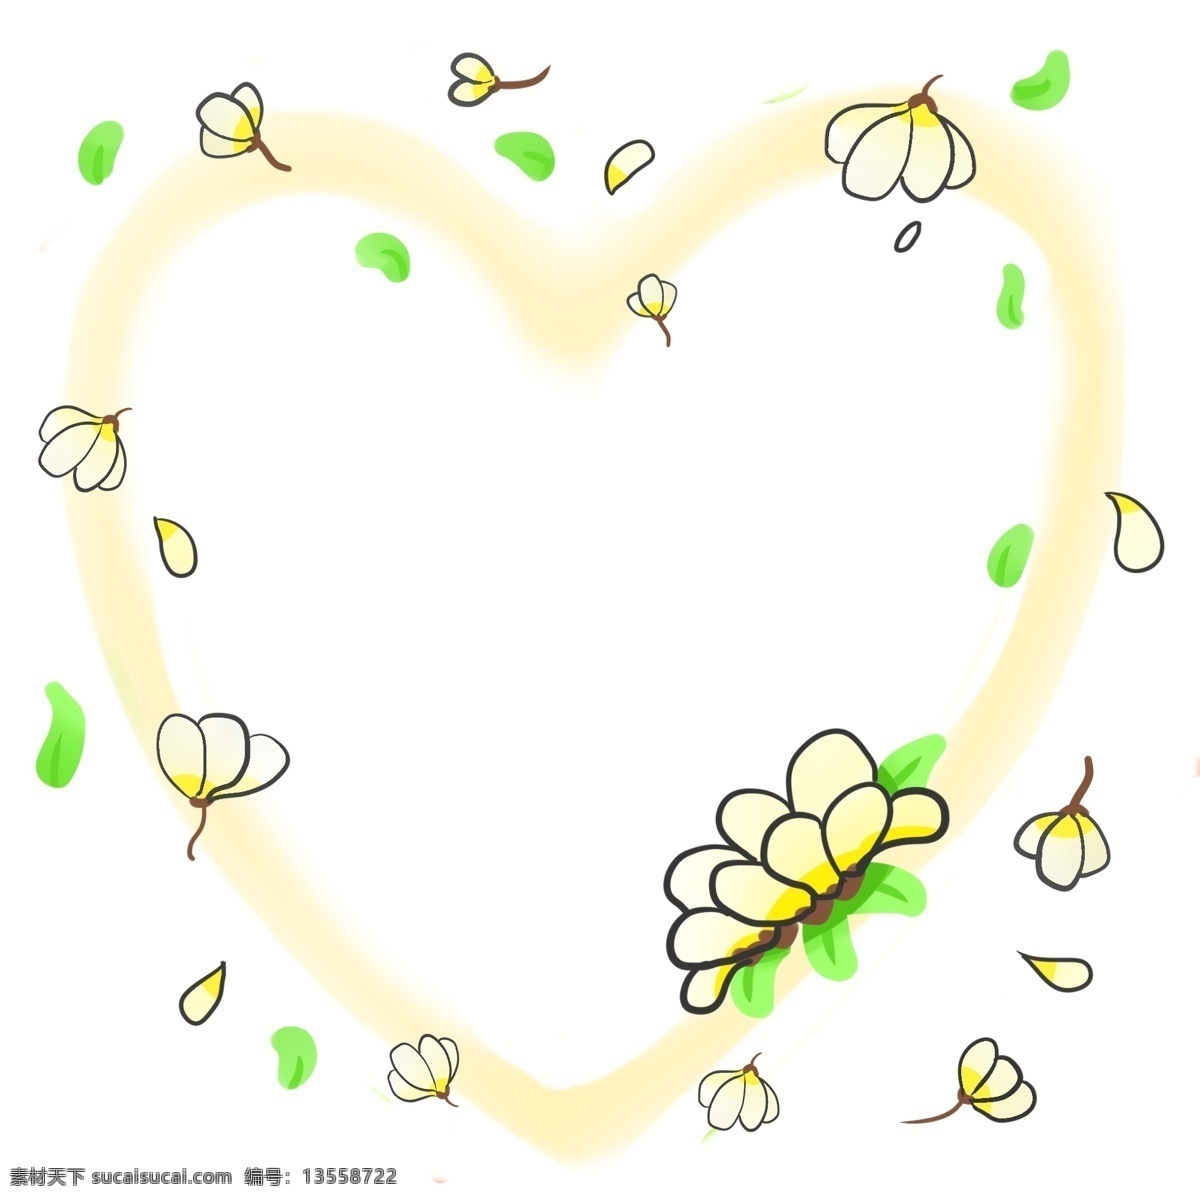 卡通 心形 边框 插画 黄色的菊花 黄色的心形 绿色的叶子 绿色的花片 黄色的花瓣 散落的花瓣 美丽的花瓣